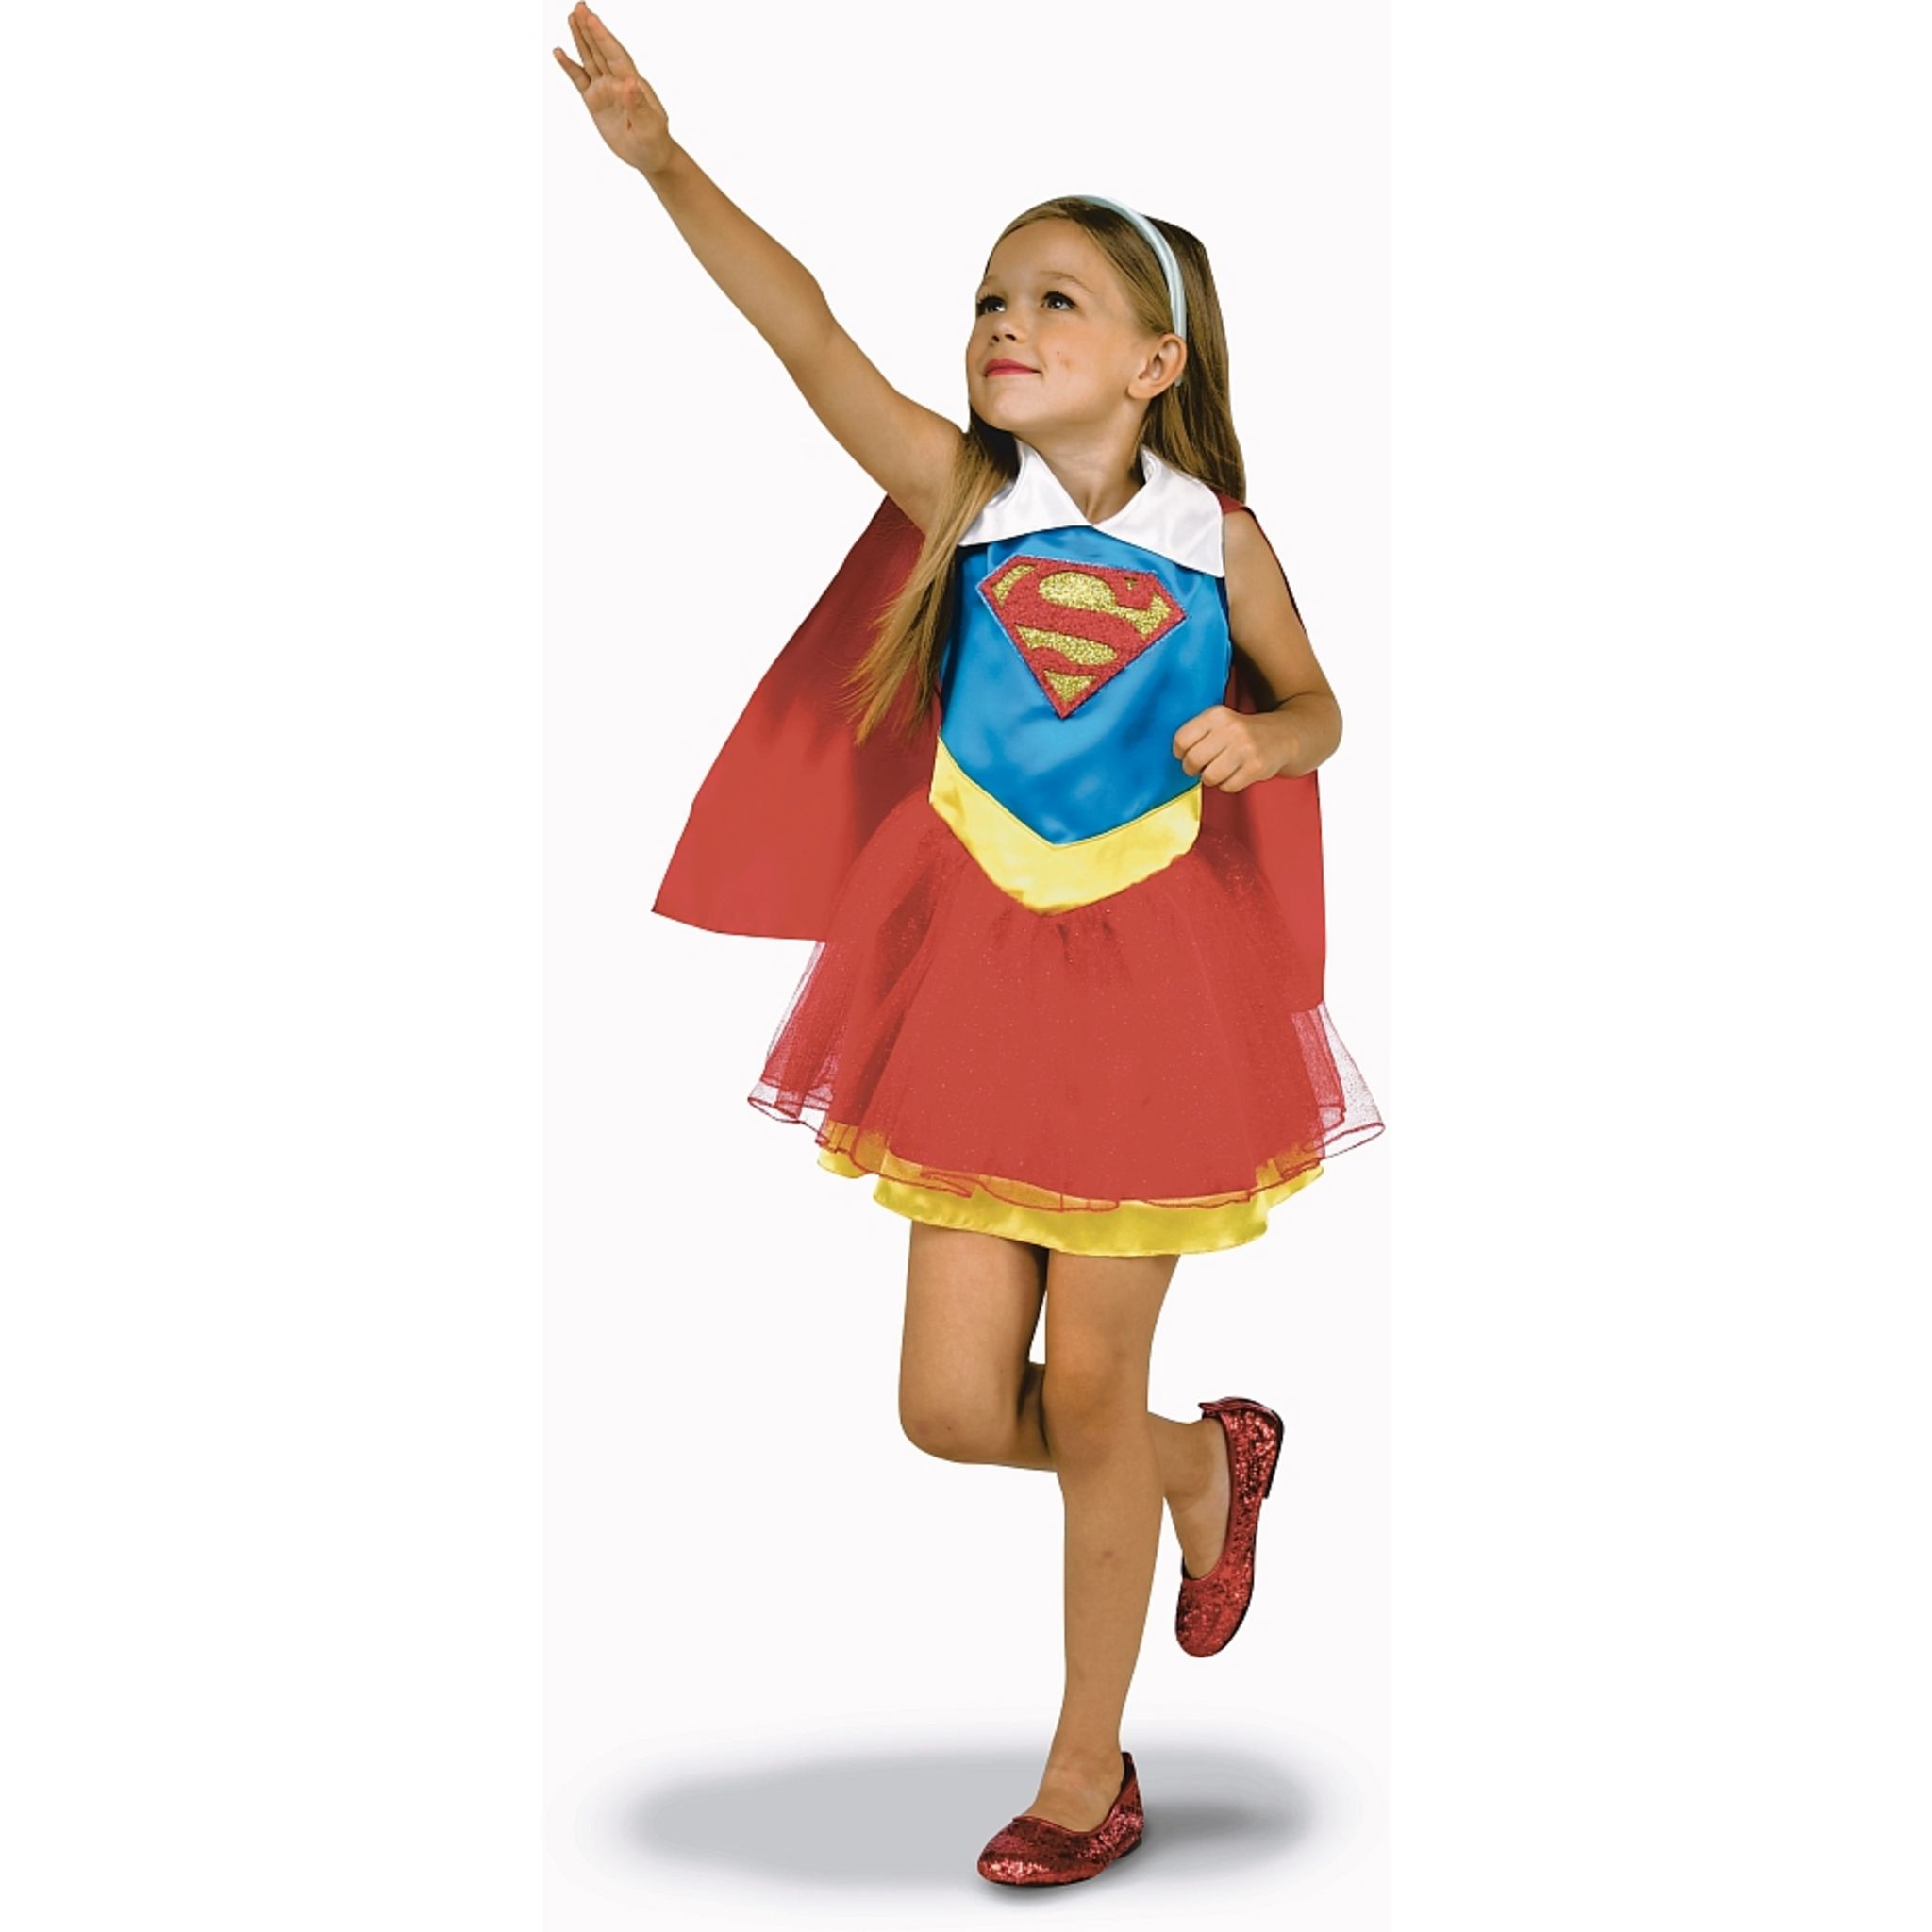 Déguisement Supergirl classique - Fille - 3/4 ans (96 à 104 cm